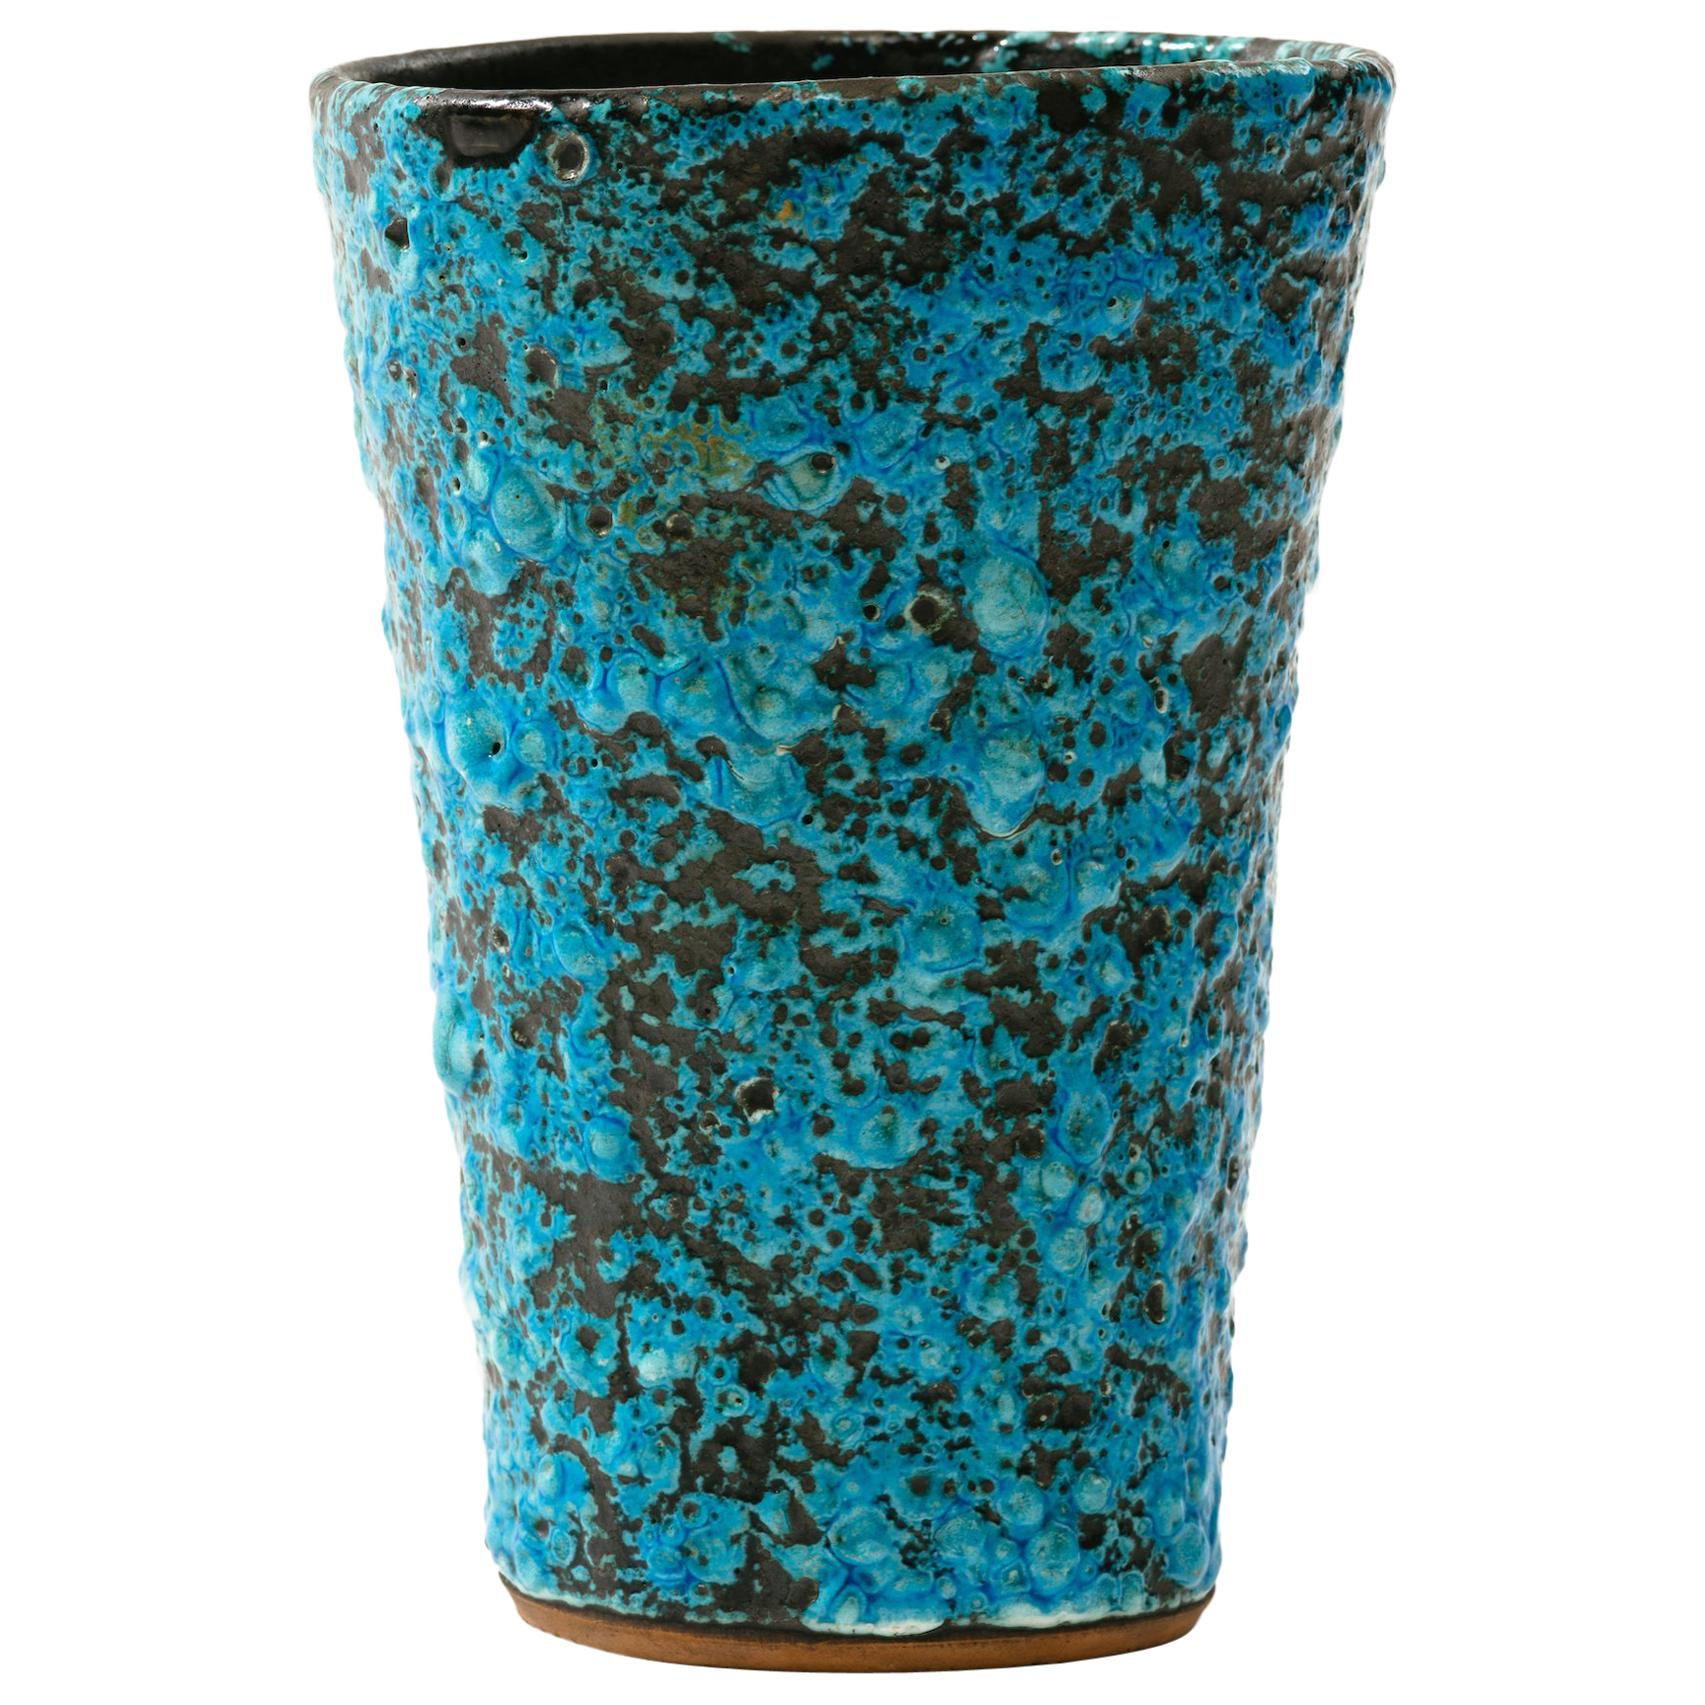 1960s Italian Turquoise Volcanic Glaze Vase